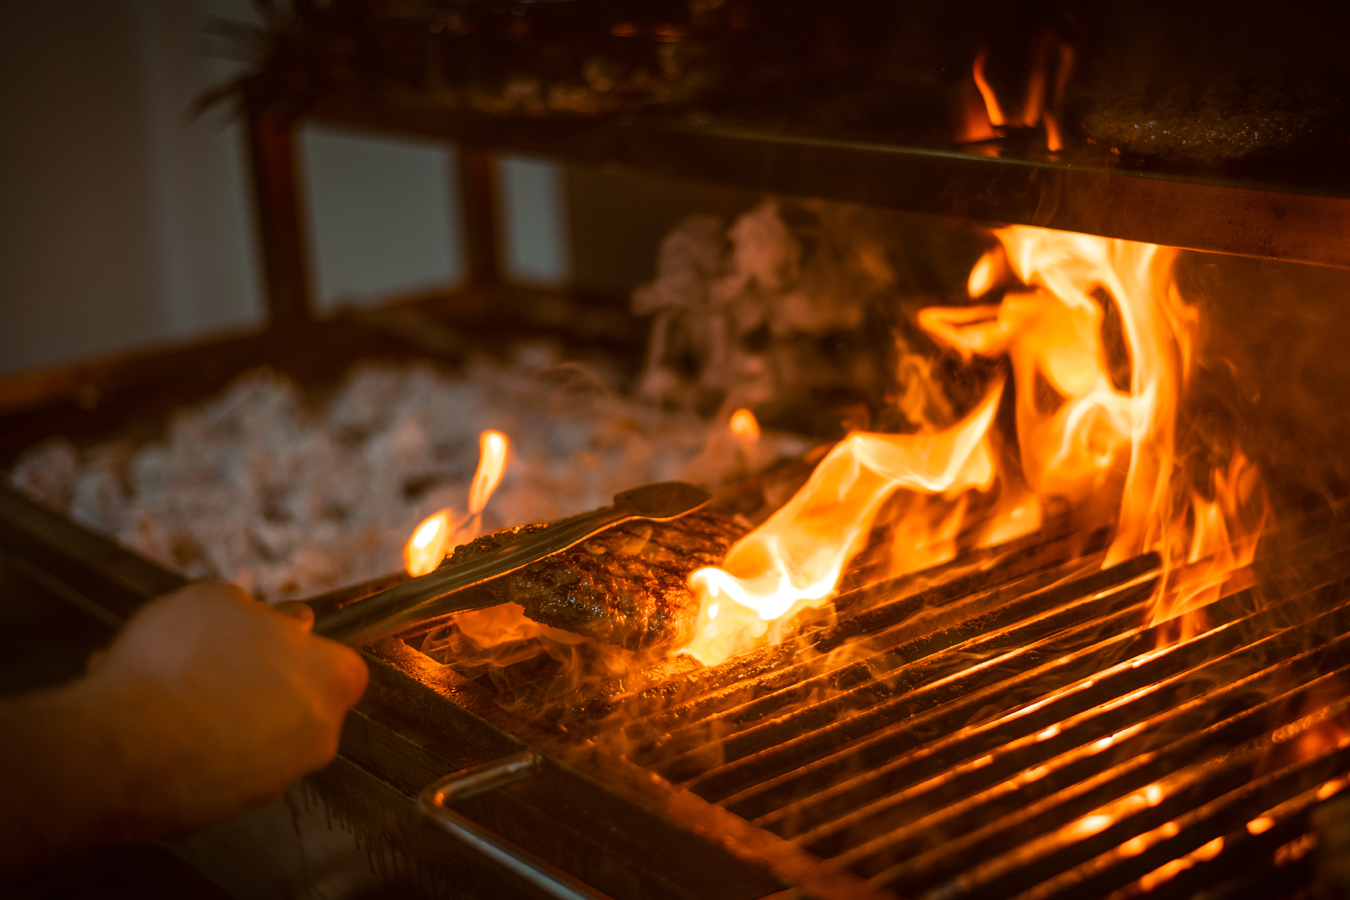 Dubajská kuchyně - příprava velbloudího burgru na otevřeném ohni